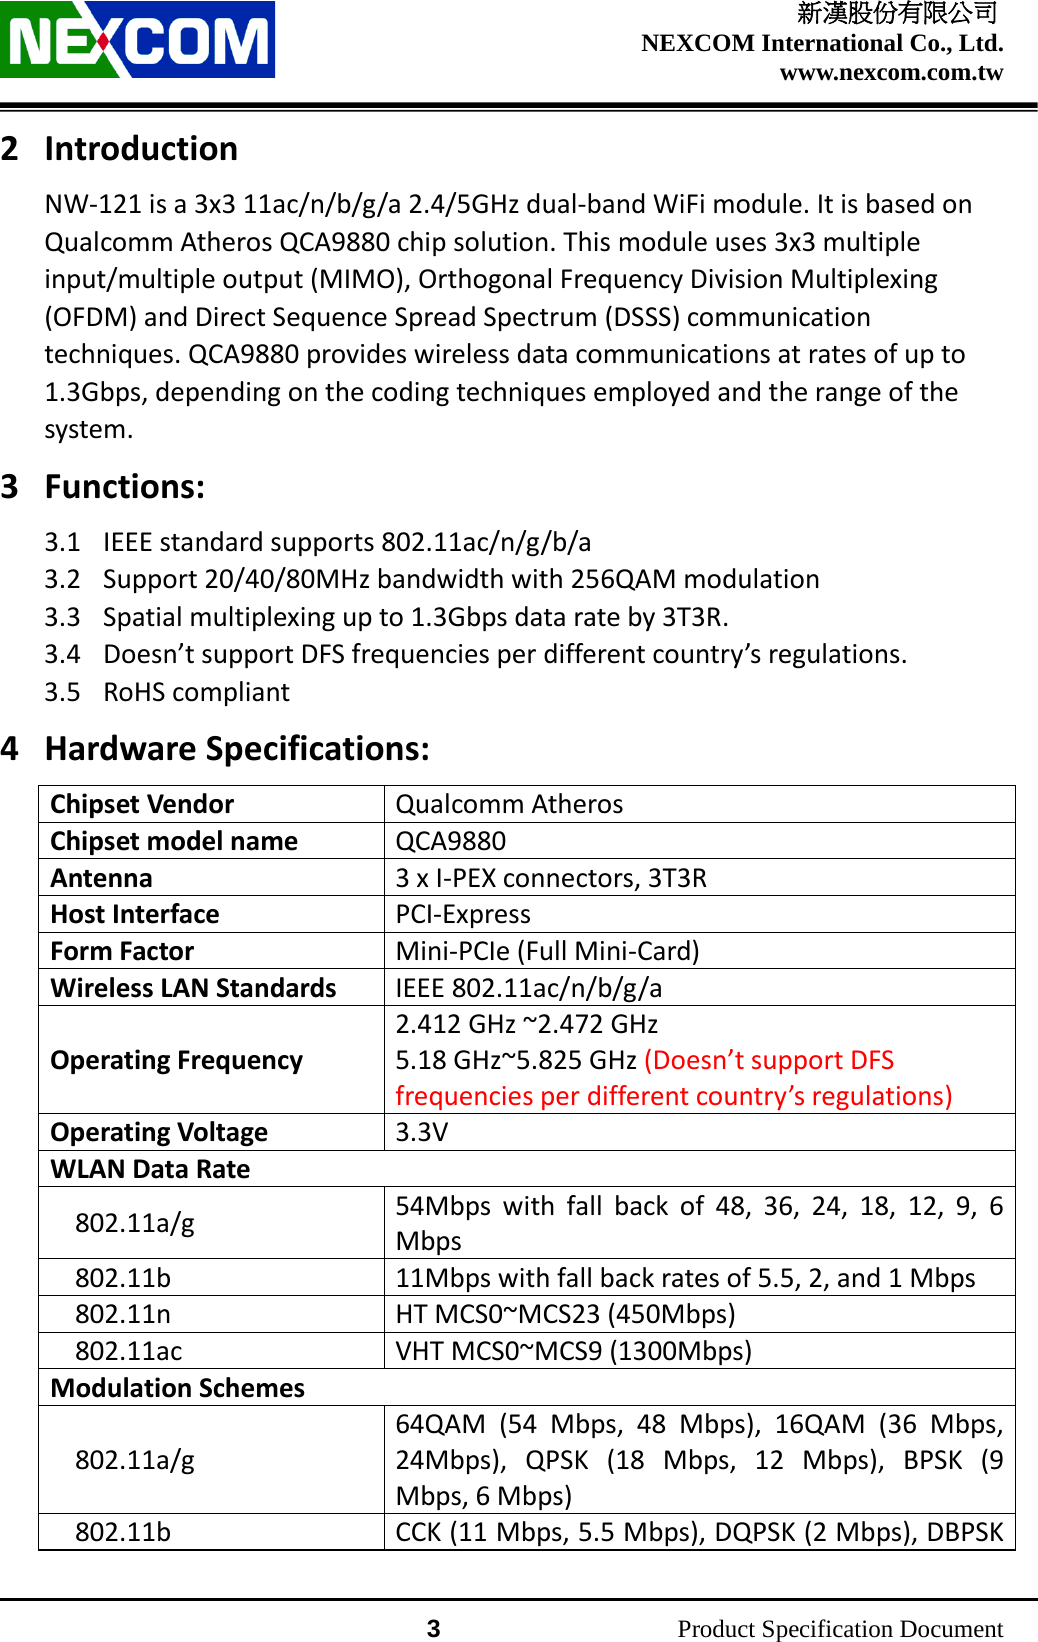    新漢股份有限公司 NEXCOM International Co., Ltd. www.nexcom.com.tw                 3          Product Specification Document 2 Introduction NW-121 is a 3x3 11ac/n/b/g/a 2.4/5GHz dual-band WiFi module. It is based on Qualcomm Atheros QCA9880 chip solution. This module uses 3x3 multiple input/multiple output (MIMO), Orthogonal Frequency Division Multiplexing (OFDM) and Direct Sequence Spread Spectrum (DSSS) communication techniques. QCA9880 provides wireless data communications at rates of up to 1.3Gbps, depending on the coding techniques employed and the range of the system. 3 Functions: 3.1 IEEE standard supports 802.11ac/n/g/b/a 3.2 Support 20/40/80MHz bandwidth with 256QAM modulation 3.3 Spatial multiplexing up to 1.3Gbps data rate by 3T3R. 3.4 Doesn’t support DFS frequencies per different country’s regulations. 3.5 RoHS compliant 4 Hardware Specifications: Chipset Vendor Qualcomm Atheros Chipset model name QCA9880 Antenna 3 x I-PEX connectors, 3T3R Host Interface PCI-Express Form Factor Mini-PCIe (Full Mini-Card) Wireless LAN Standards IEEE 802.11ac/n/b/g/a Operating Frequency 2.412 GHz ~2.472 GHz 5.18 GHz~5.825 GHz (Doesn’t support DFS frequencies per different country’s regulations) Operating Voltage 3.3V WLAN Data Rate 802.11a/g 54Mbps with fall back of 48, 36, 24, 18, 12, 9, 6 Mbps 802.11b 11Mbps with fall back rates of 5.5, 2, and 1 Mbps 802.11n HT MCS0~MCS23 (450Mbps) 802.11ac VHT MCS0~MCS9 (1300Mbps) Modulation Schemes 802.11a/g 64QAM (54 Mbps, 48 Mbps), 16QAM (36 Mbps, 24Mbps), QPSK (18 Mbps, 12 Mbps), BPSK (9 Mbps, 6 Mbps) 802.11b CCK (11 Mbps, 5.5 Mbps), DQPSK (2 Mbps), DBPSK 